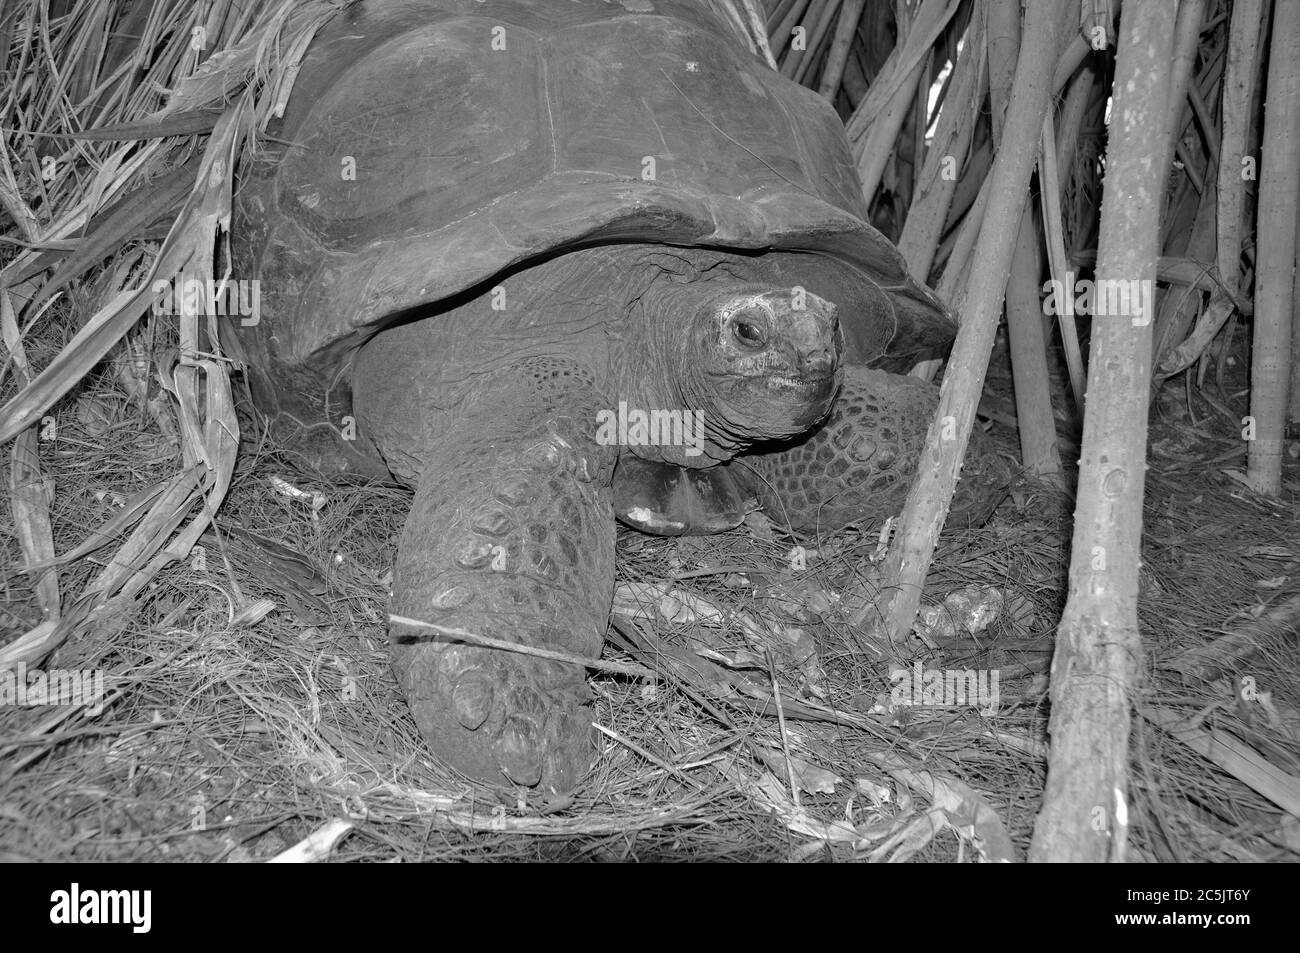 Kenya : une tortue géante de marcher dans les mangroves dans Parc Haller dans un renaturated calcstone la mienne de Mombasa Banque D'Images